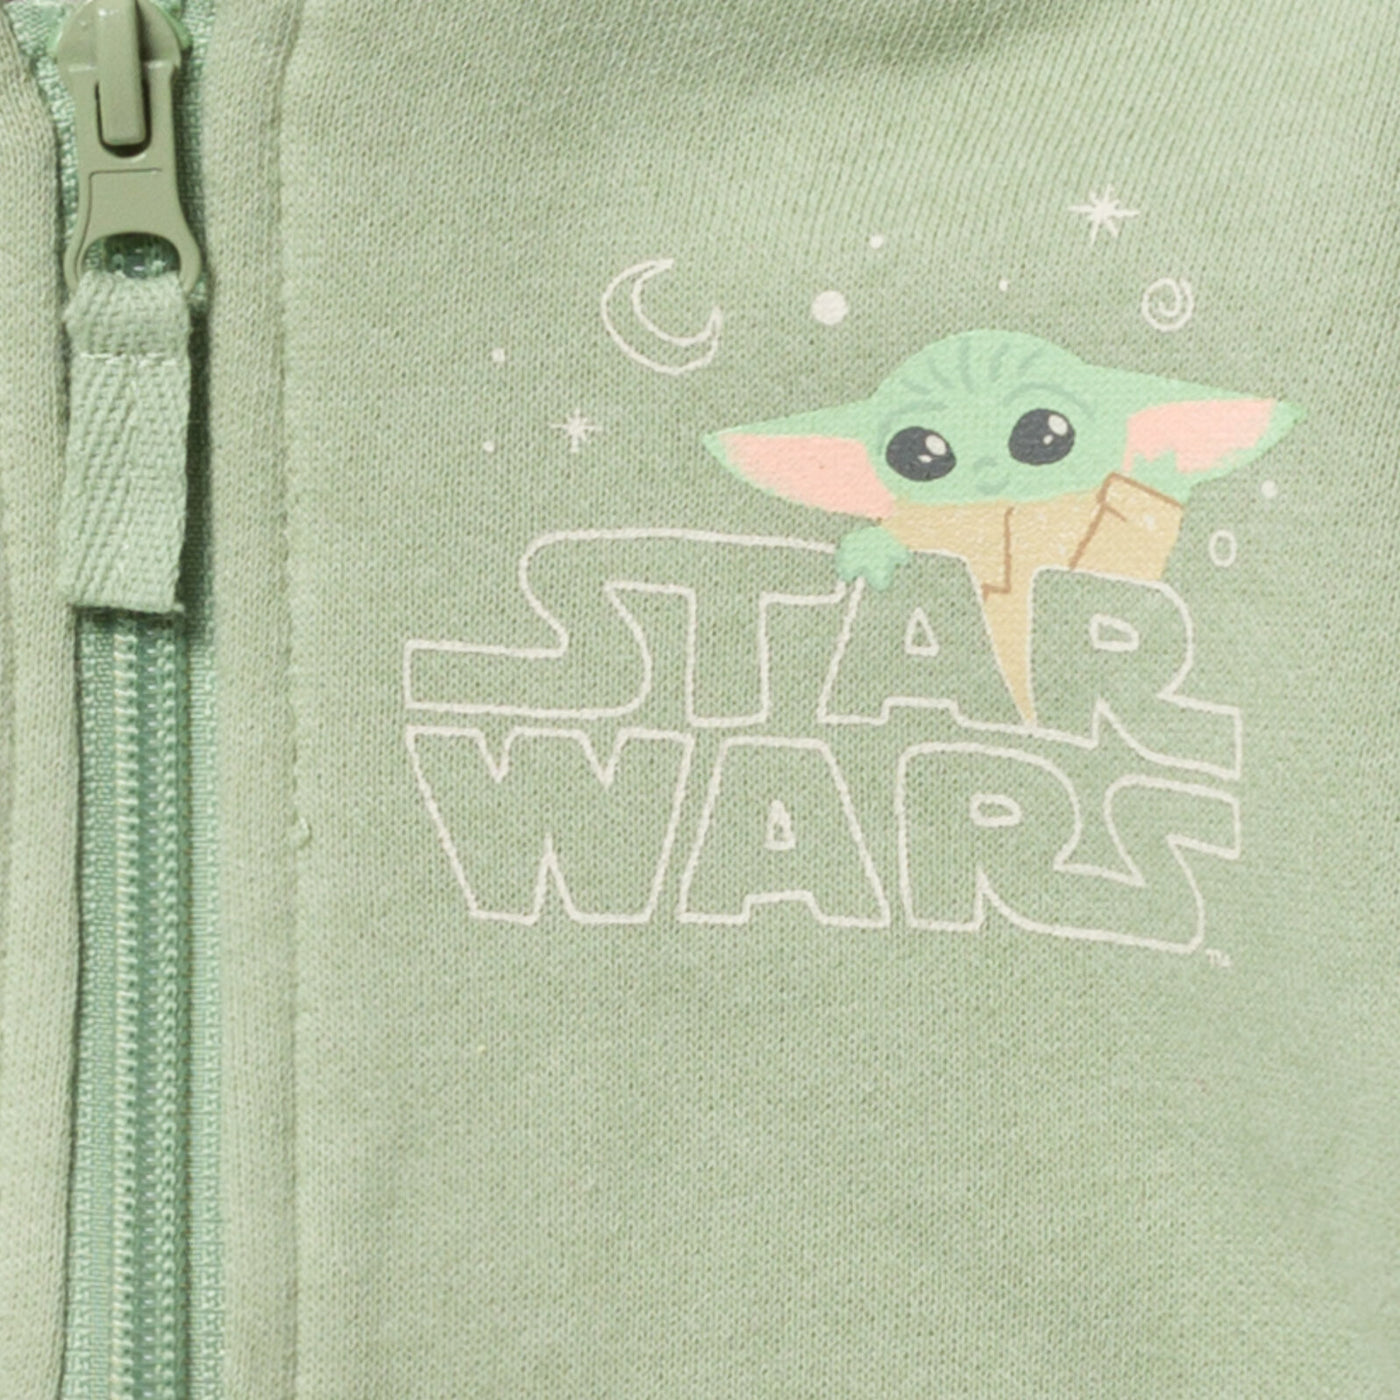 Sudadera con capucha y cremallera Baby Yoda de Star Wars